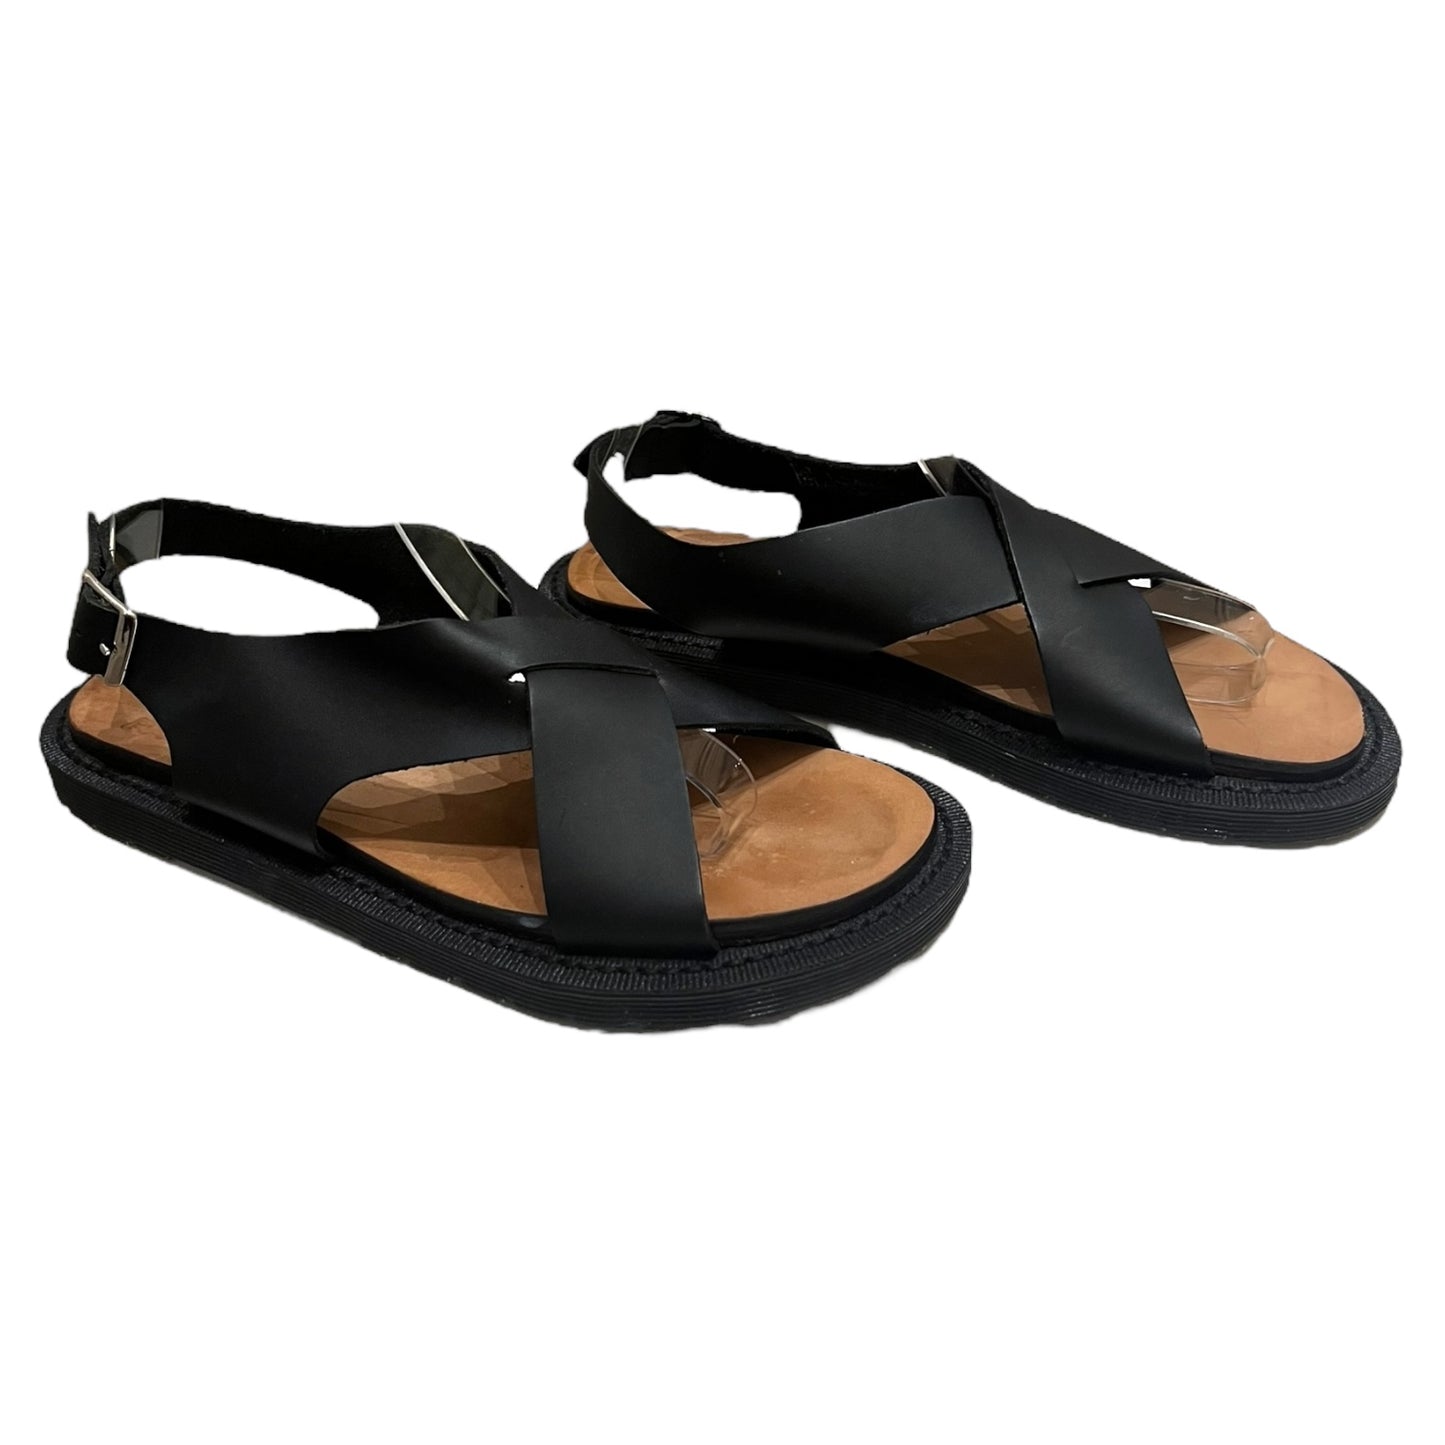 Dr Martens Black Sandals - 5